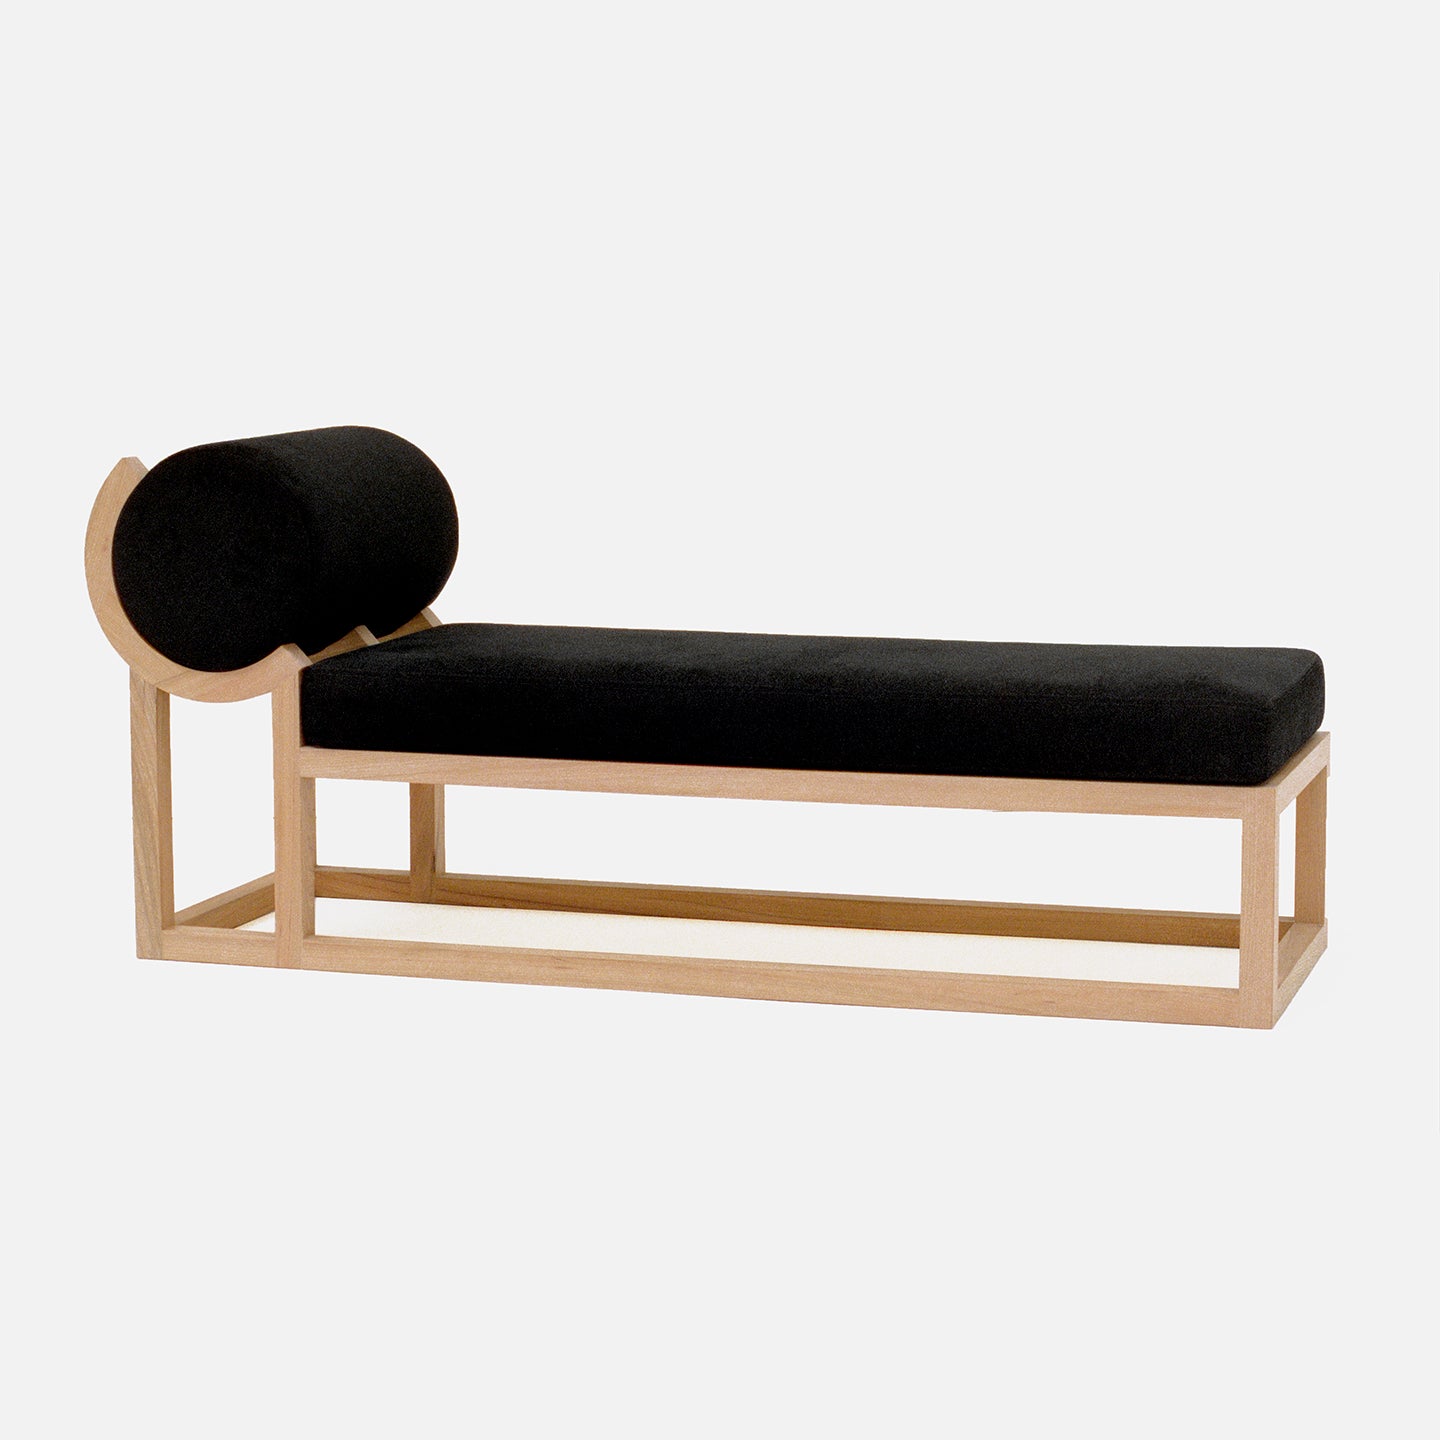 chaise longue design bank iepenhout